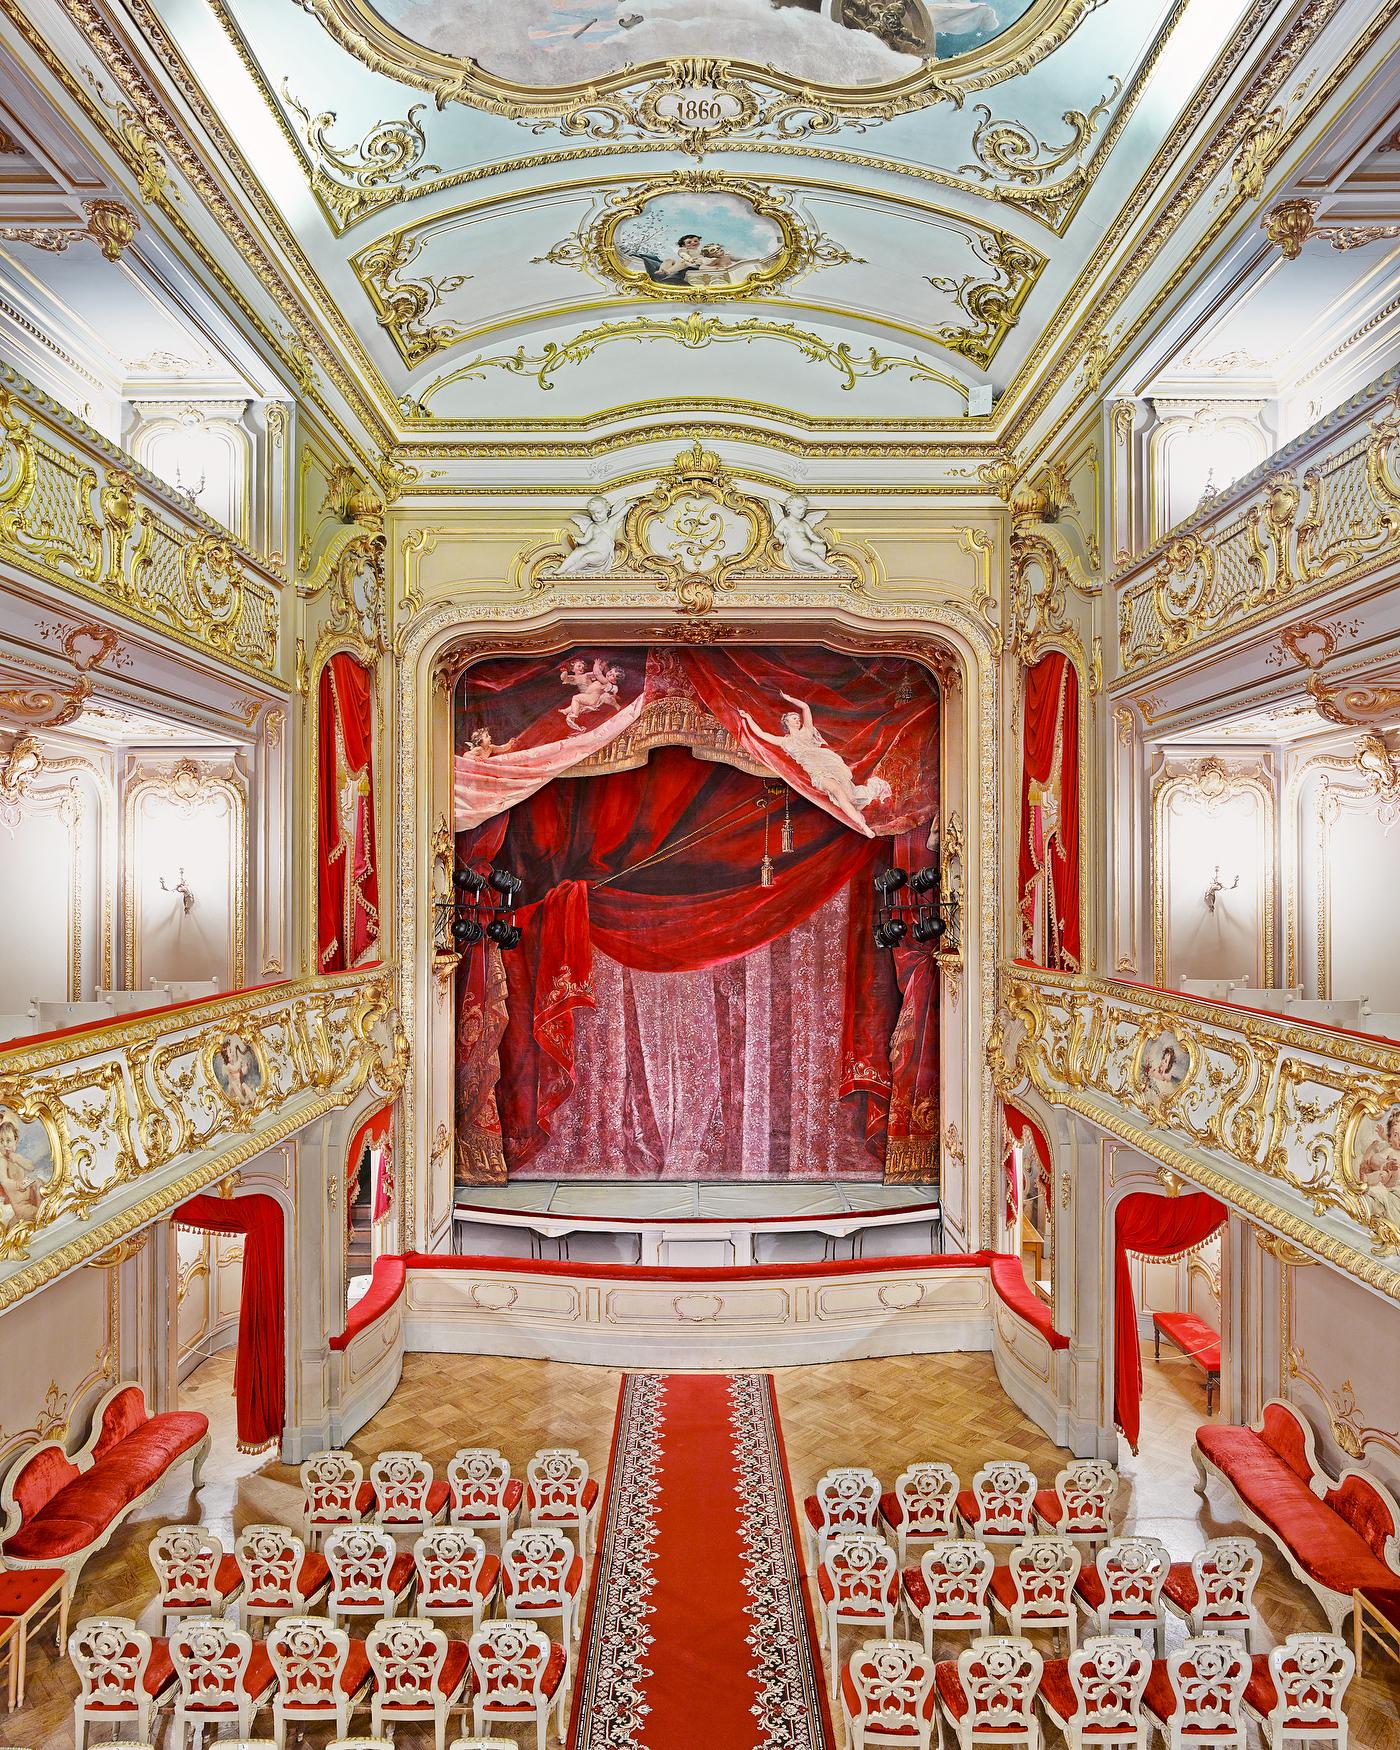 Yusopf Theatre Curtain, St Petersburg, Russia (59” x 73.5”)